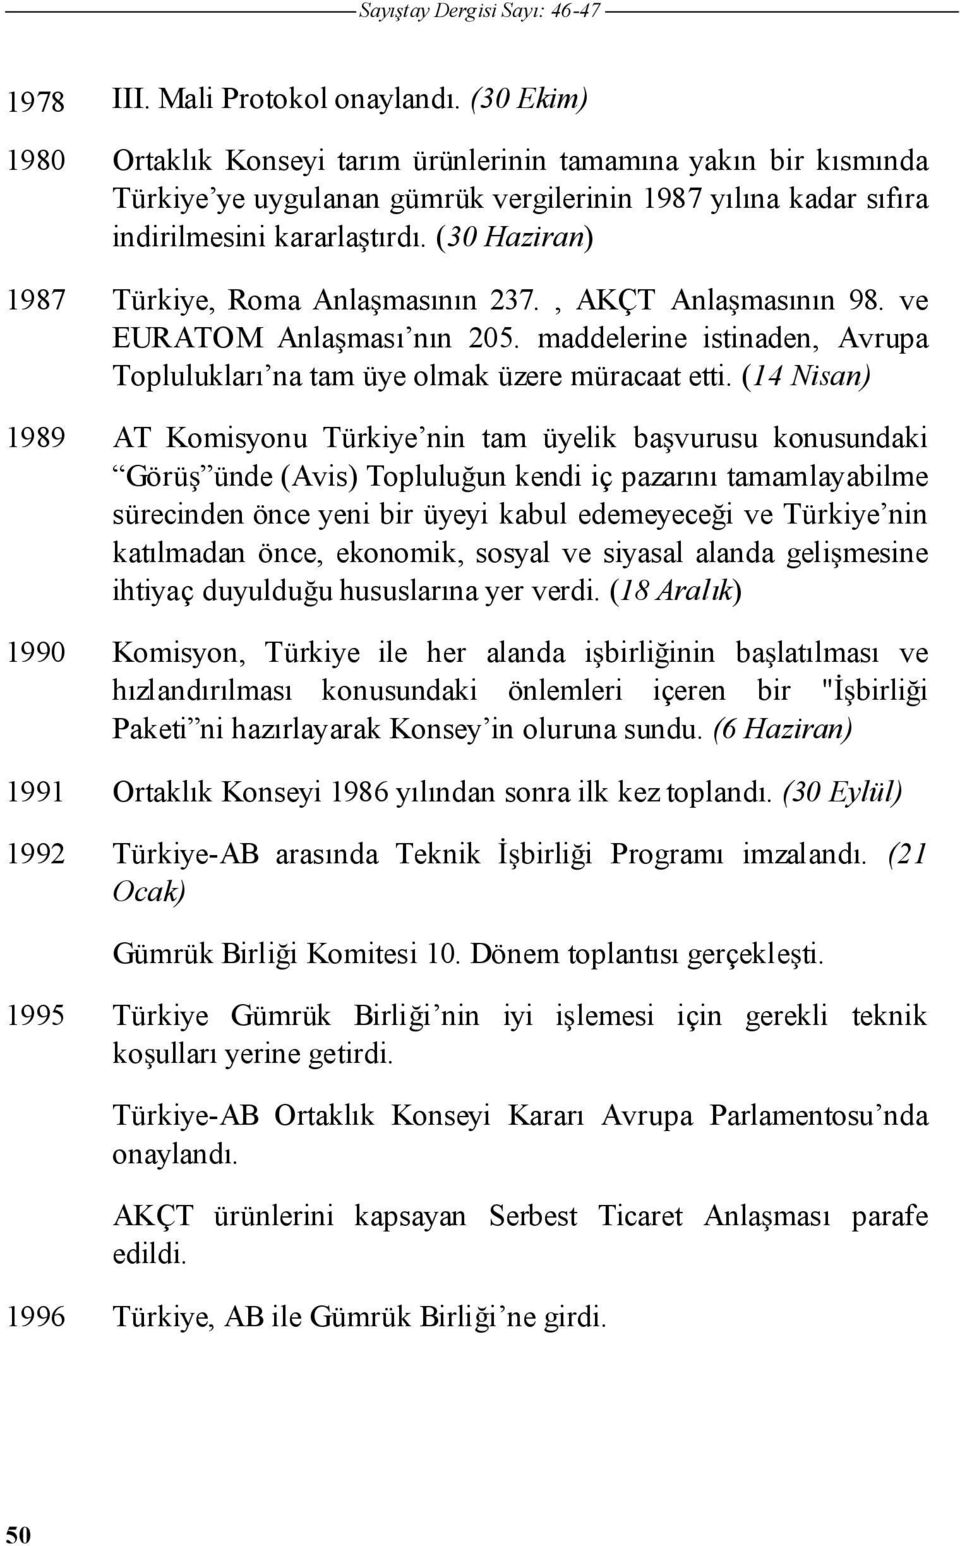 (30 Haziran) 1987 Türkiye, Roma Anla masının 237., AKÇT Anla masının 98. ve EURATOM Anla ması nın 205. maddelerine istinaden, Avrupa Toplulukları na tam üye olmak üzere müracaat etti.